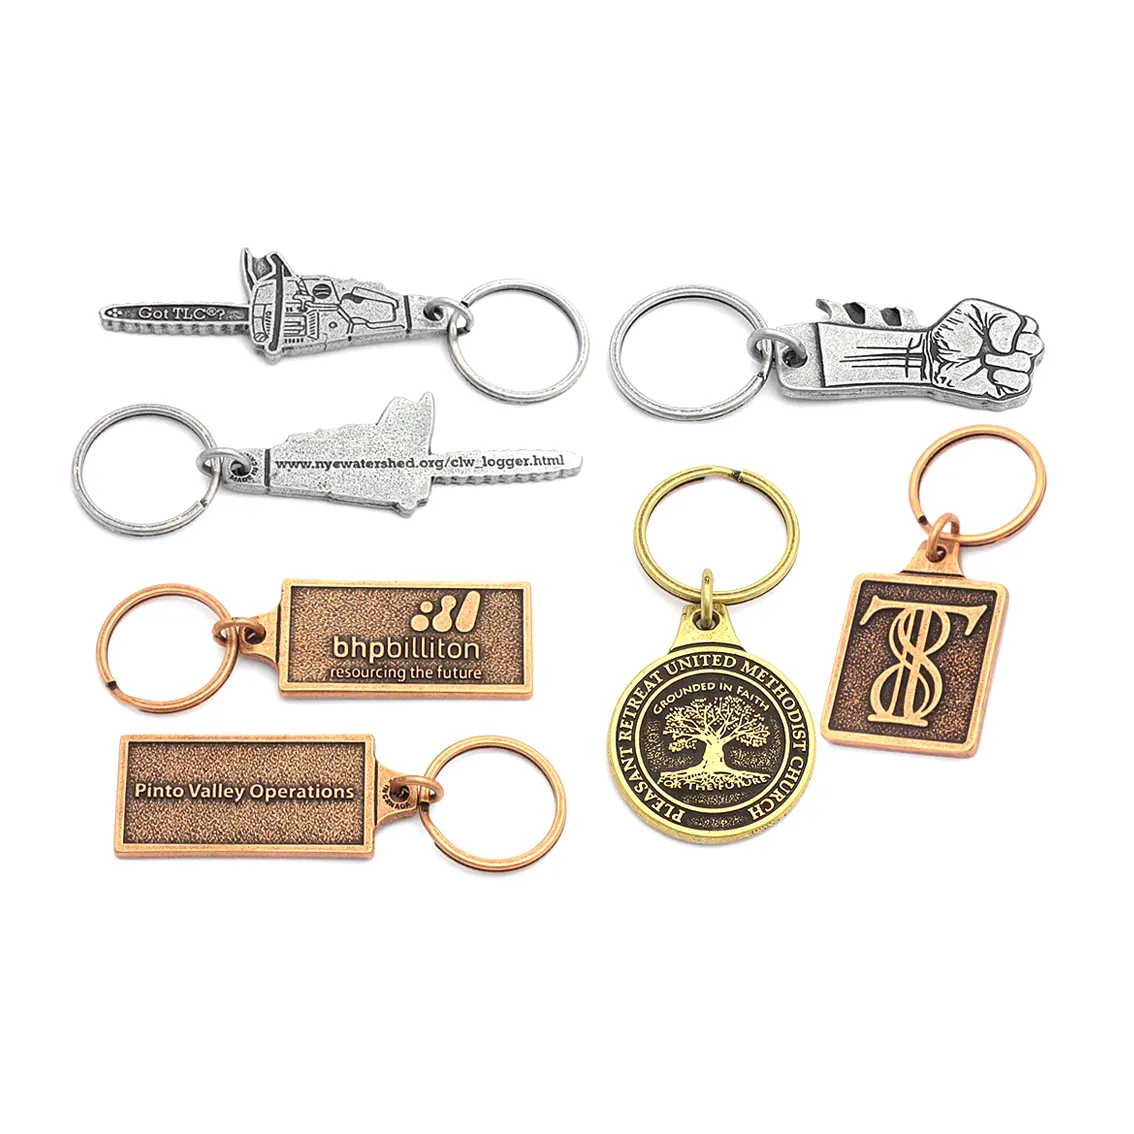 Fabricants de porte-clés en métal avec design de logo Porte-clés promotionnel en gros Porte-clés souvenir avec logo en métal 3D personnalisé